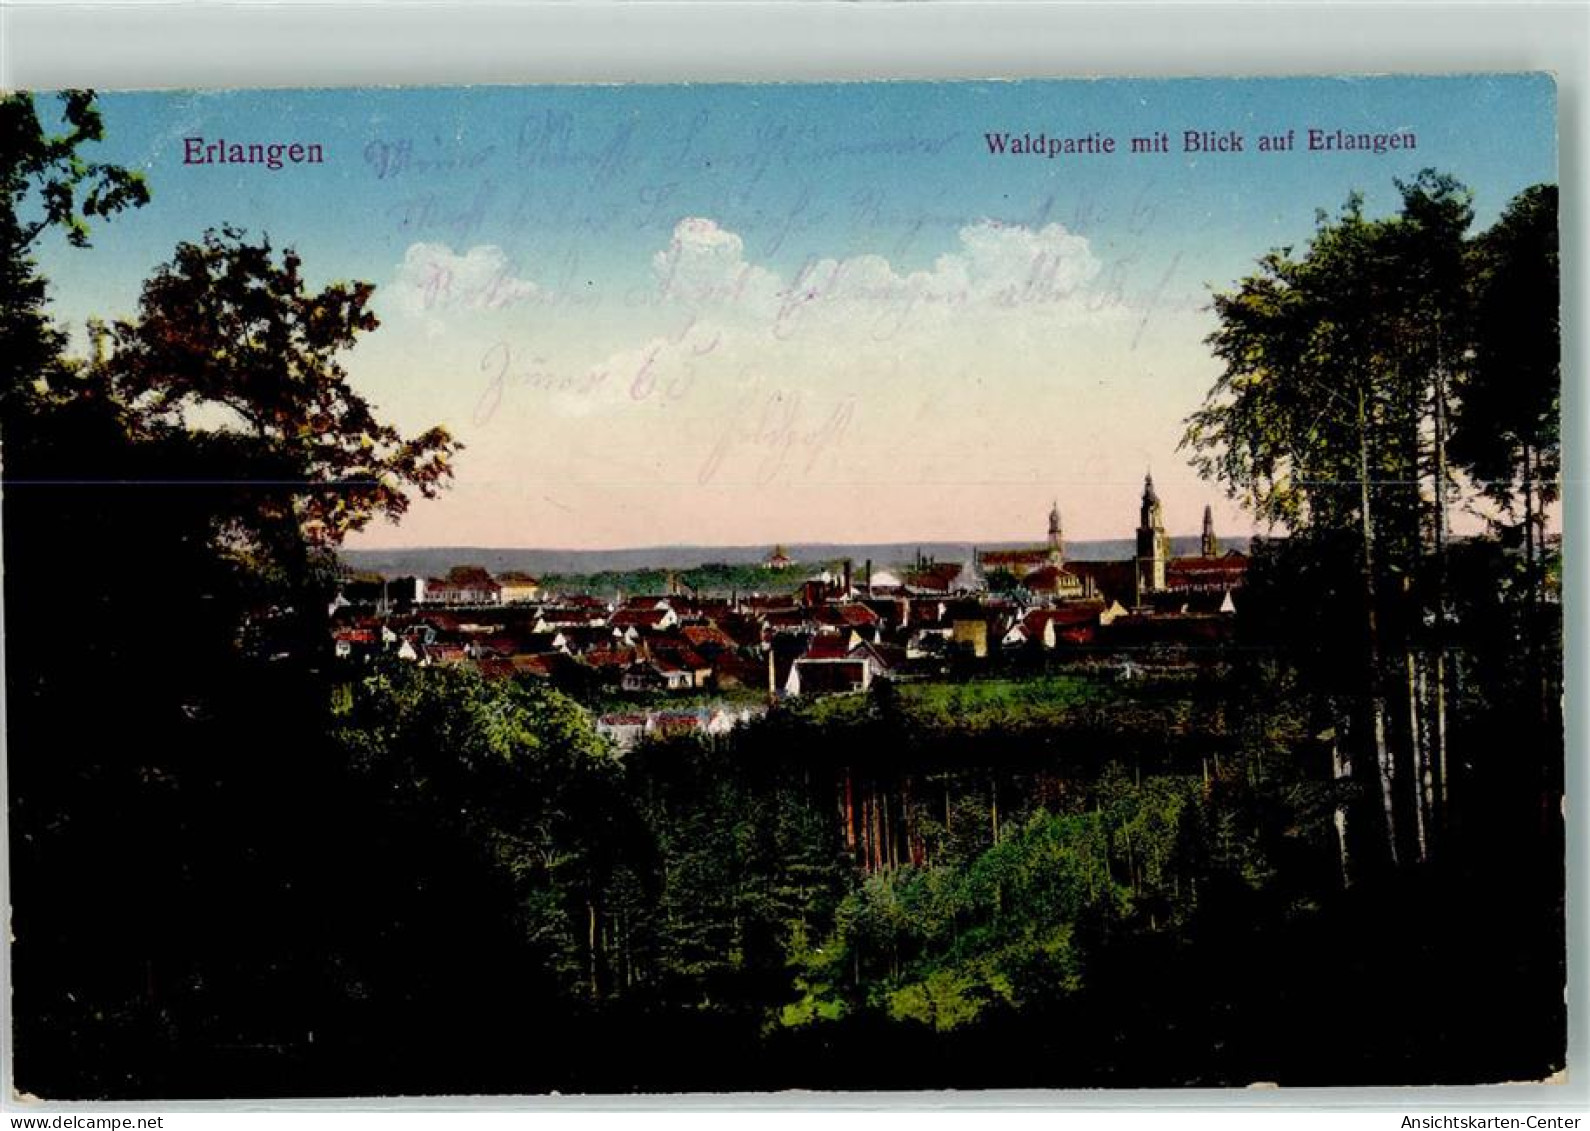 39297006 - Erlangen - Erlangen